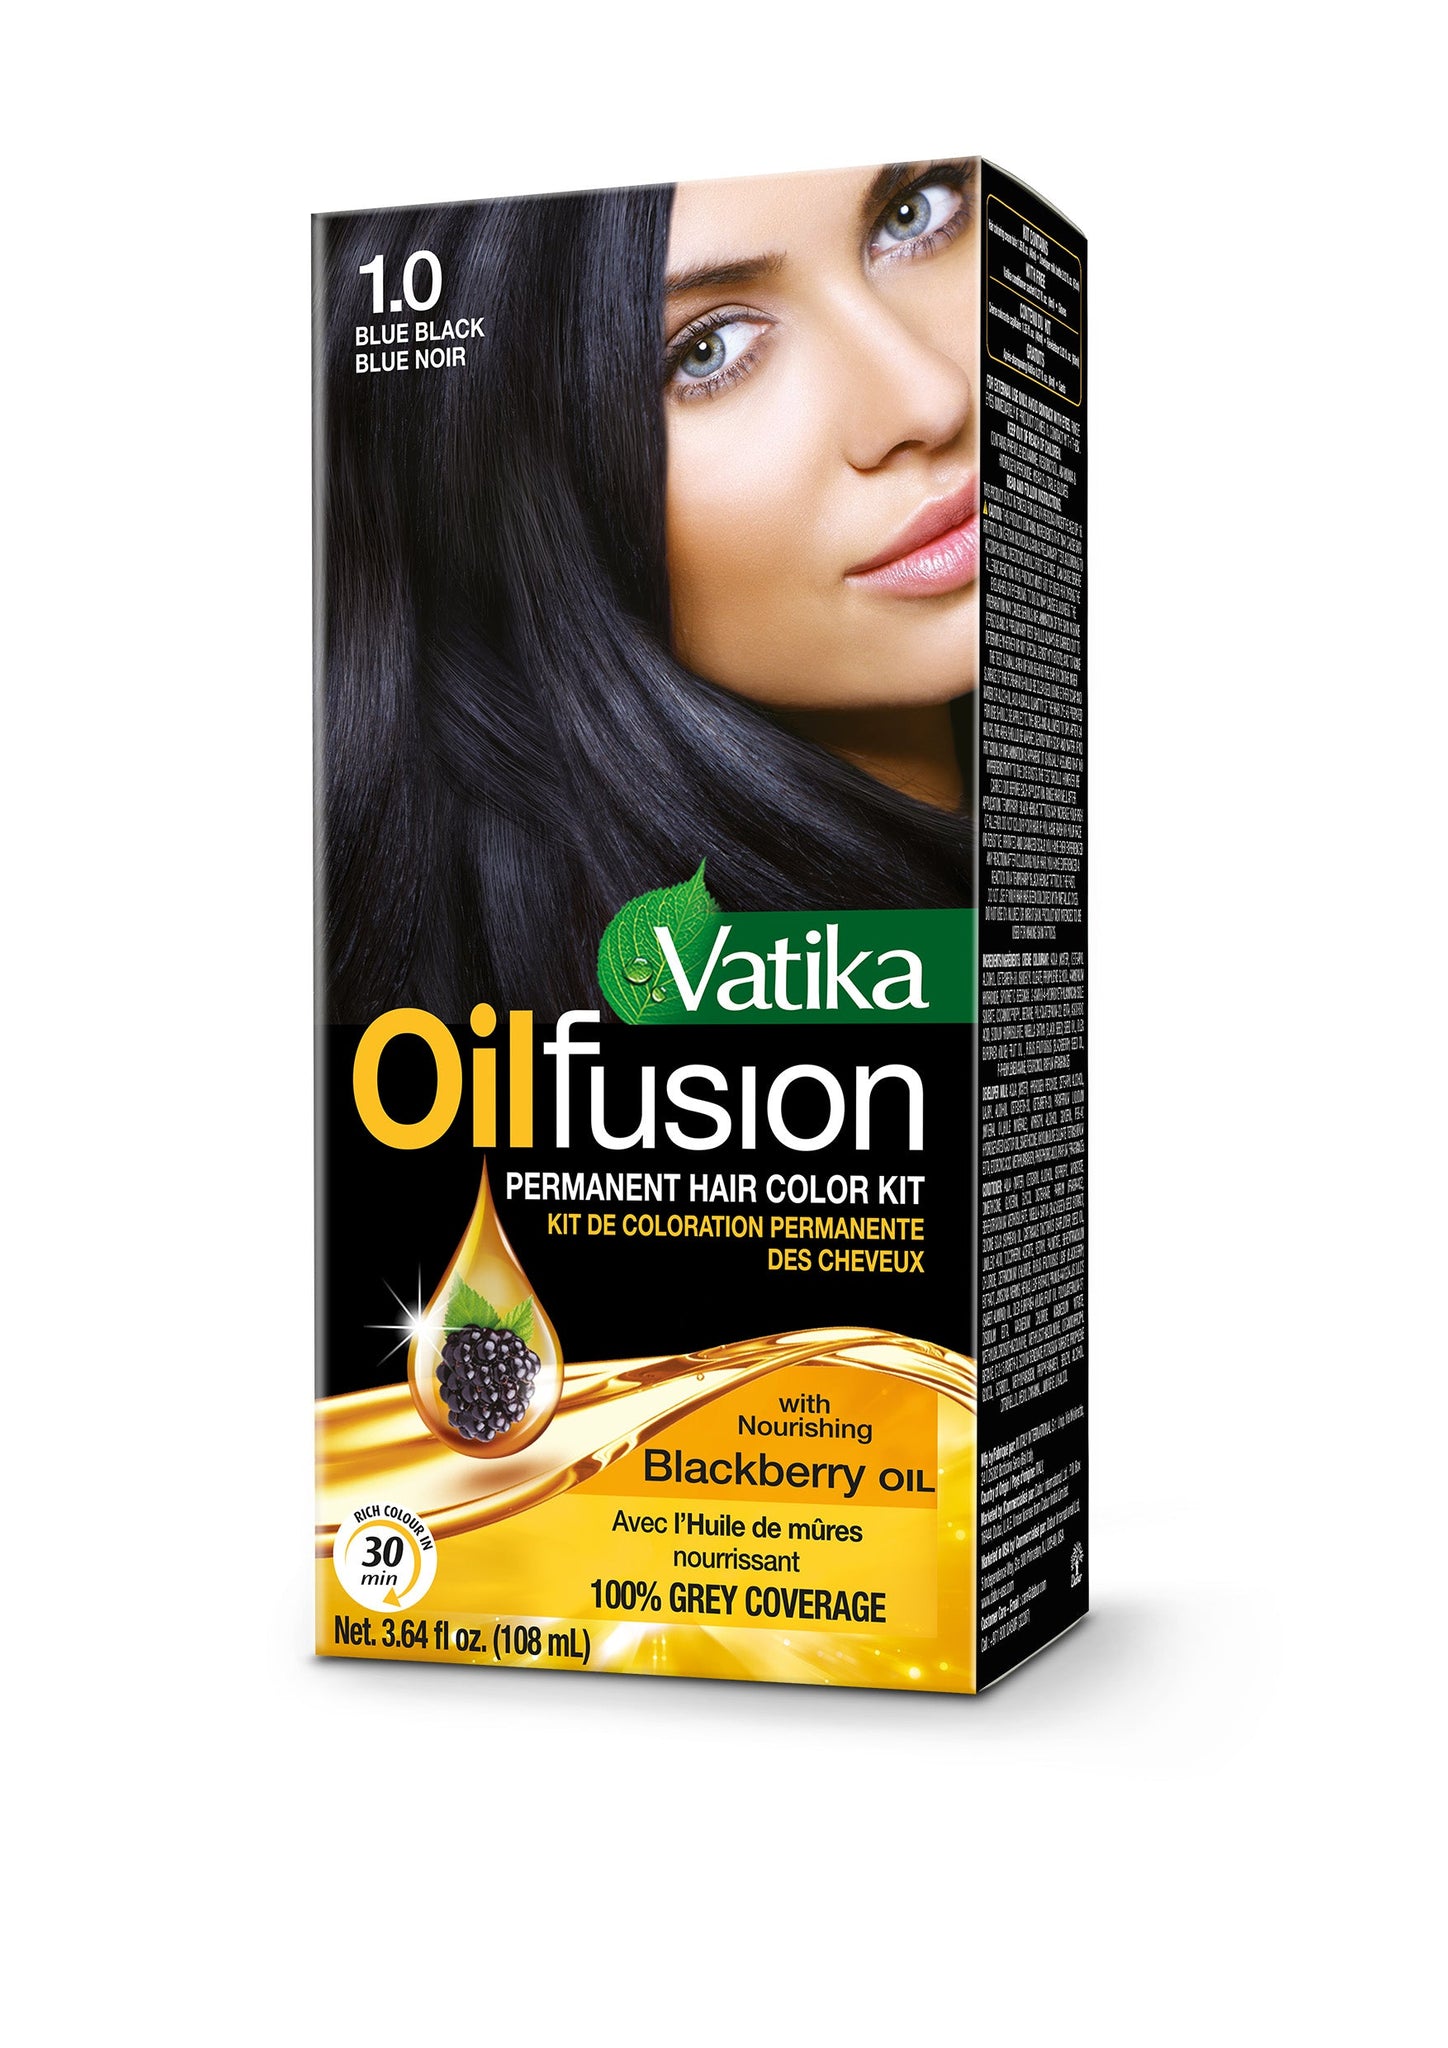 Vatika Oil Fusion Permanent Hair Color Kit (Blue Black)